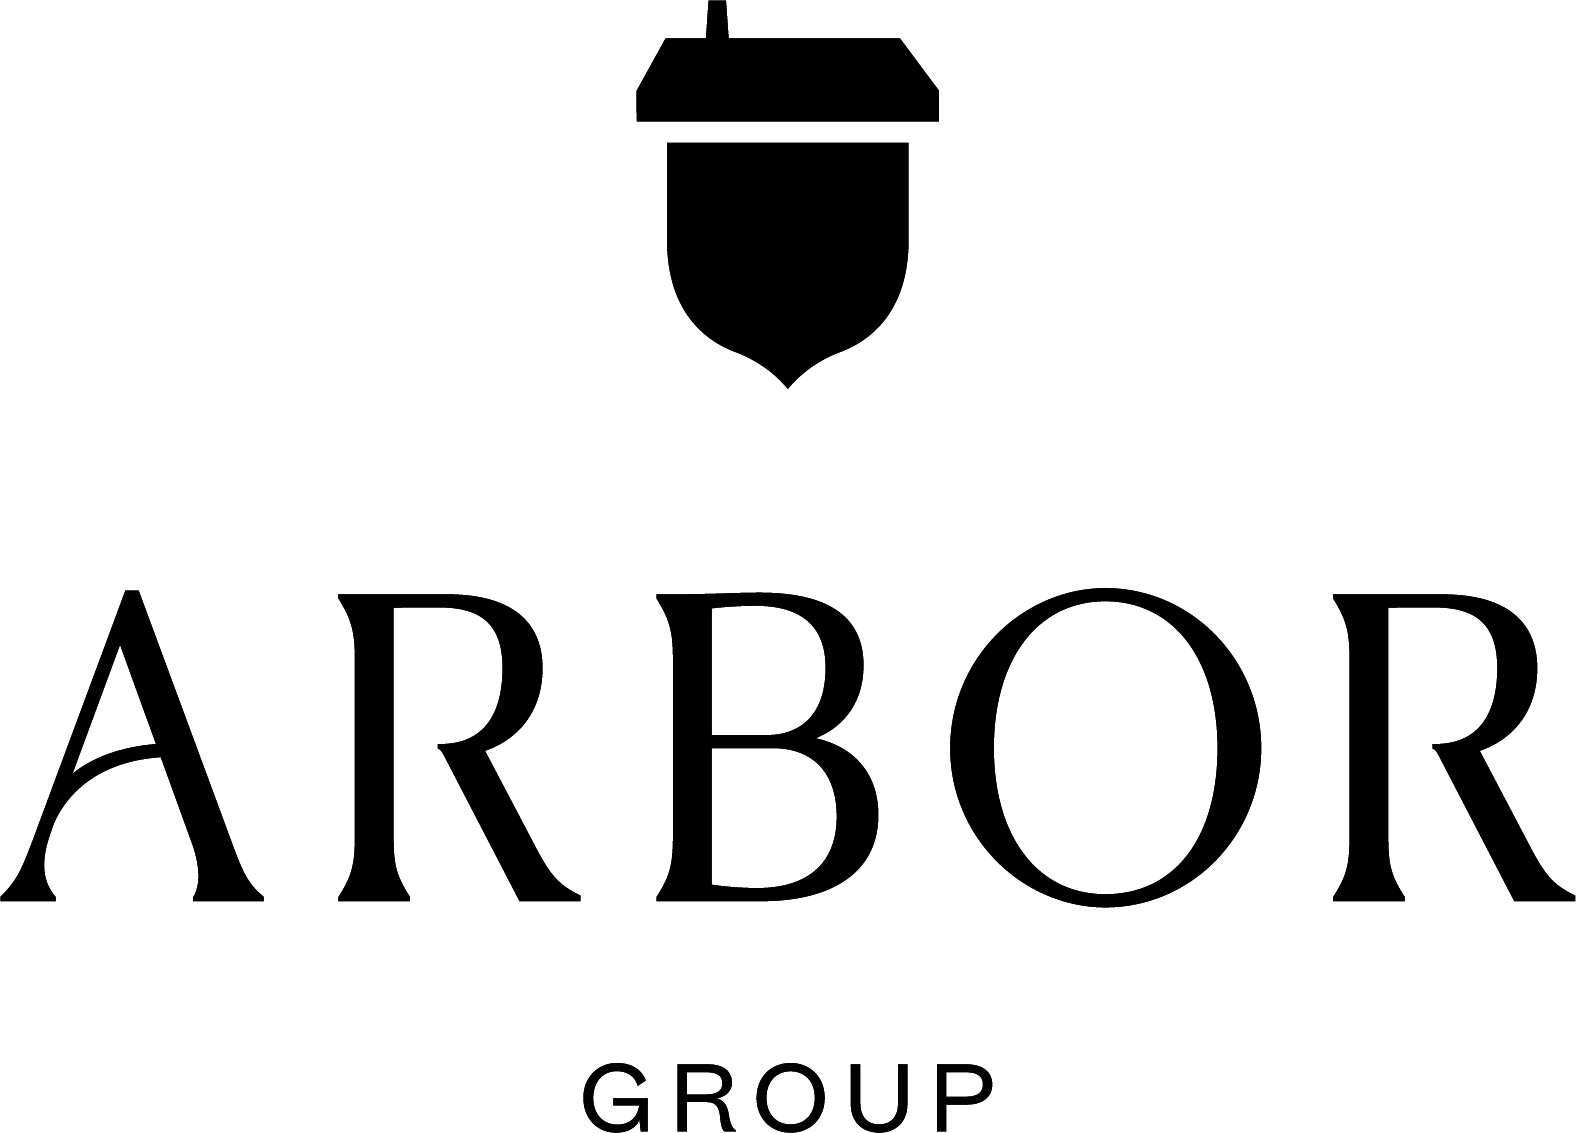 The-Arbor-Group-Vertical-Lockup-Black.jpg